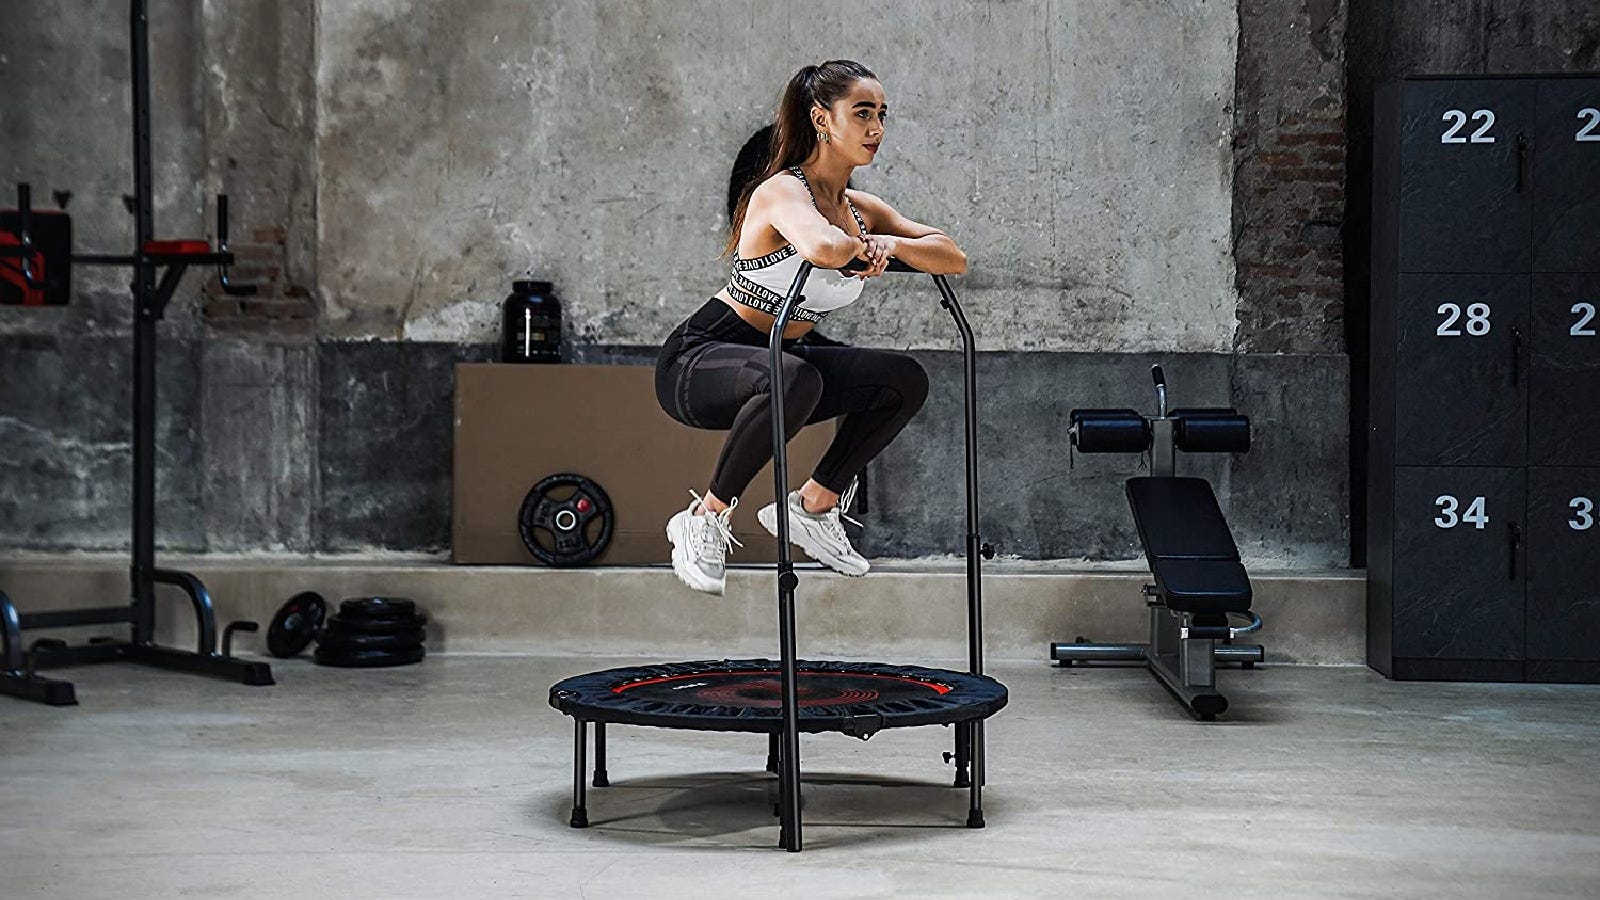 Les meilleurs mini trampolines pour faire de l’exercice et développer ses muscles